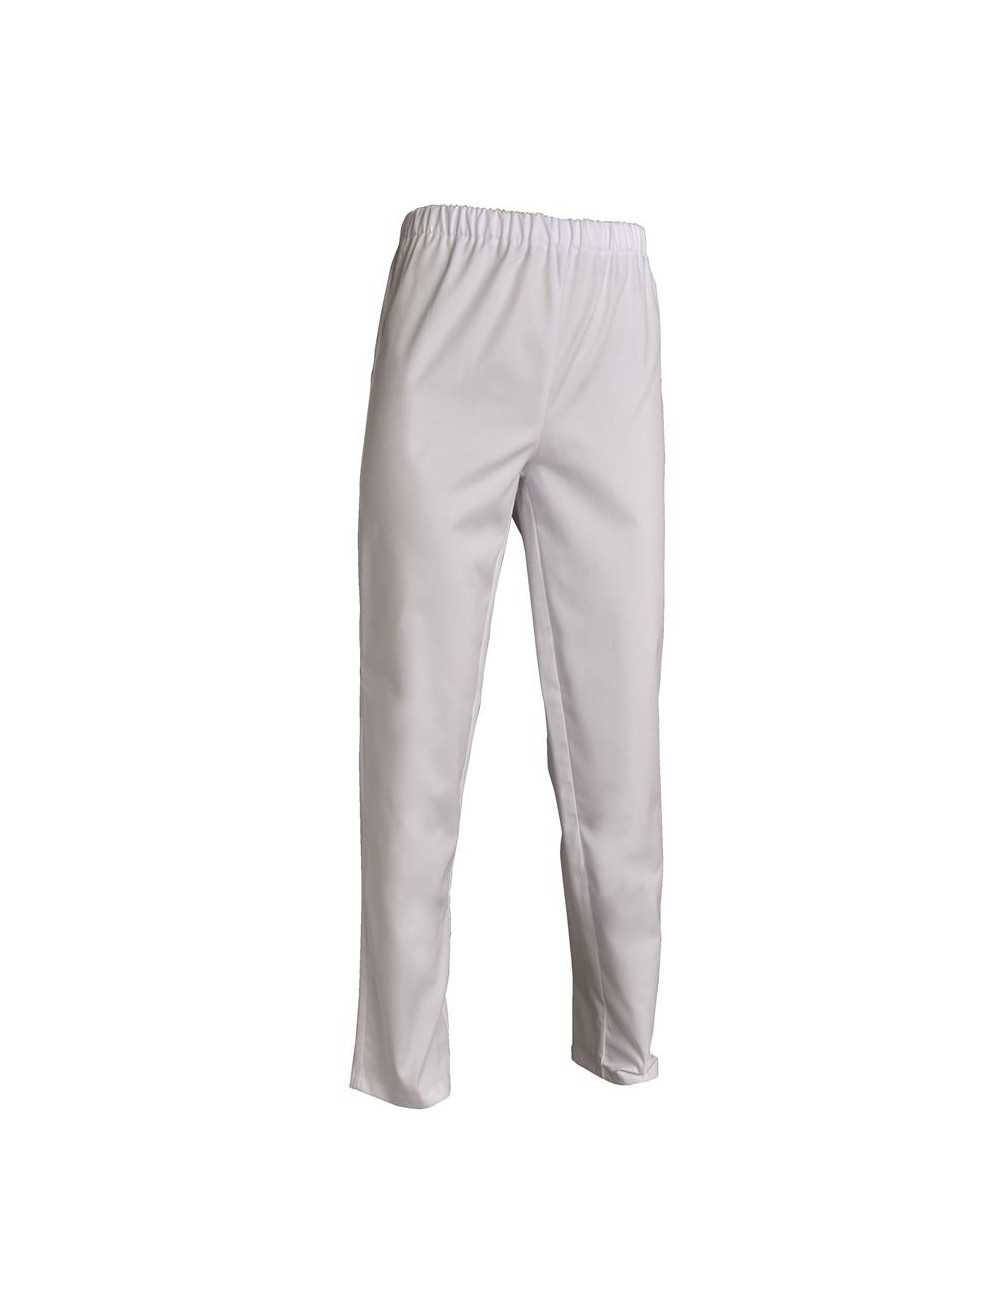 Pantalones de trabajo blancos de André, Mankaia